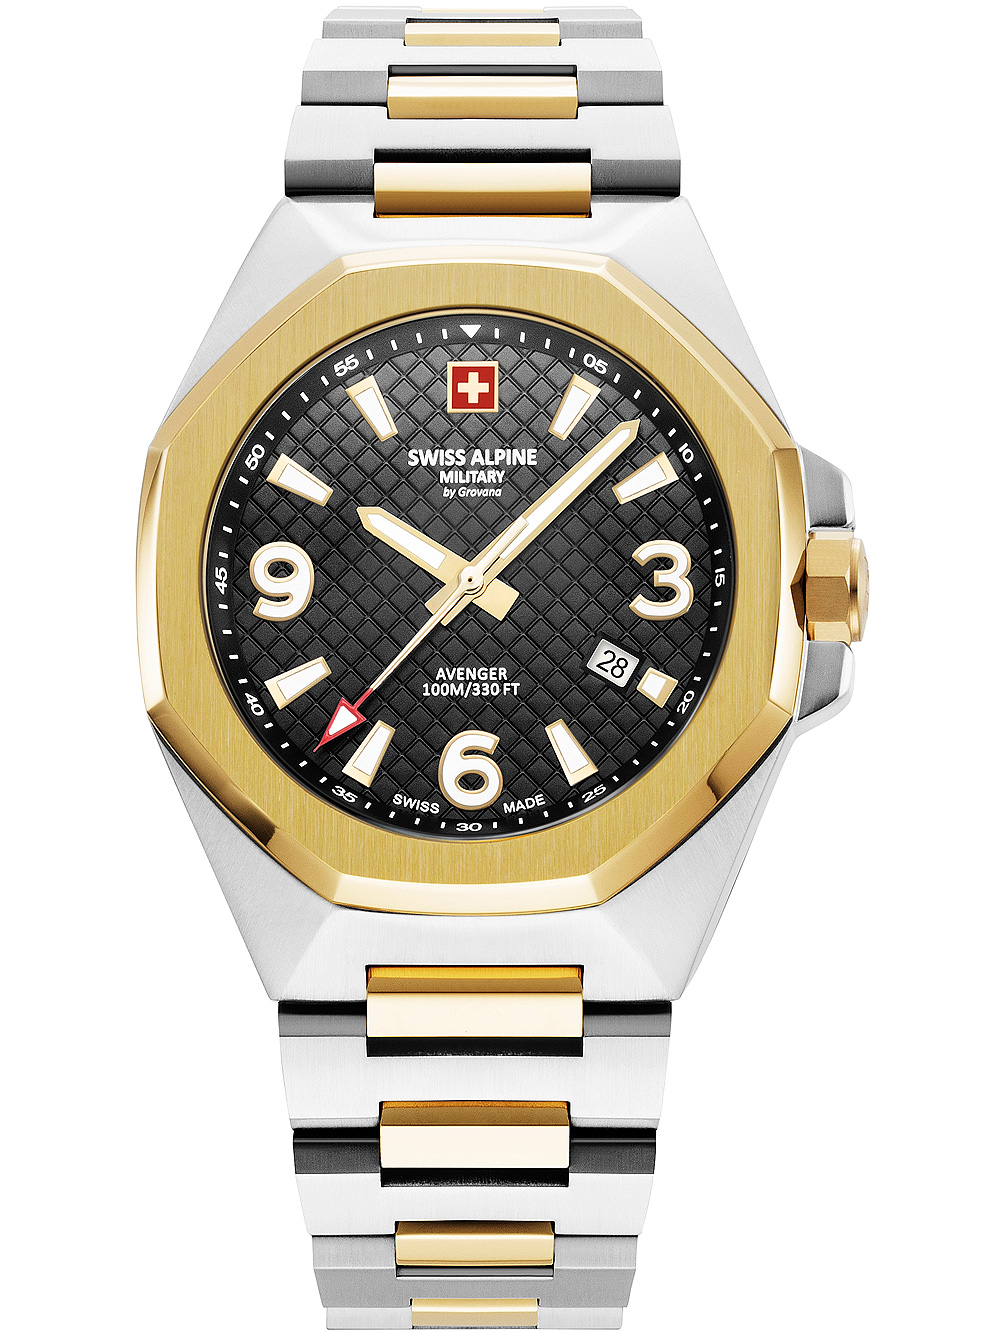 Pánské hodinky Swiss Alpine Military 7005.1147 Avenger